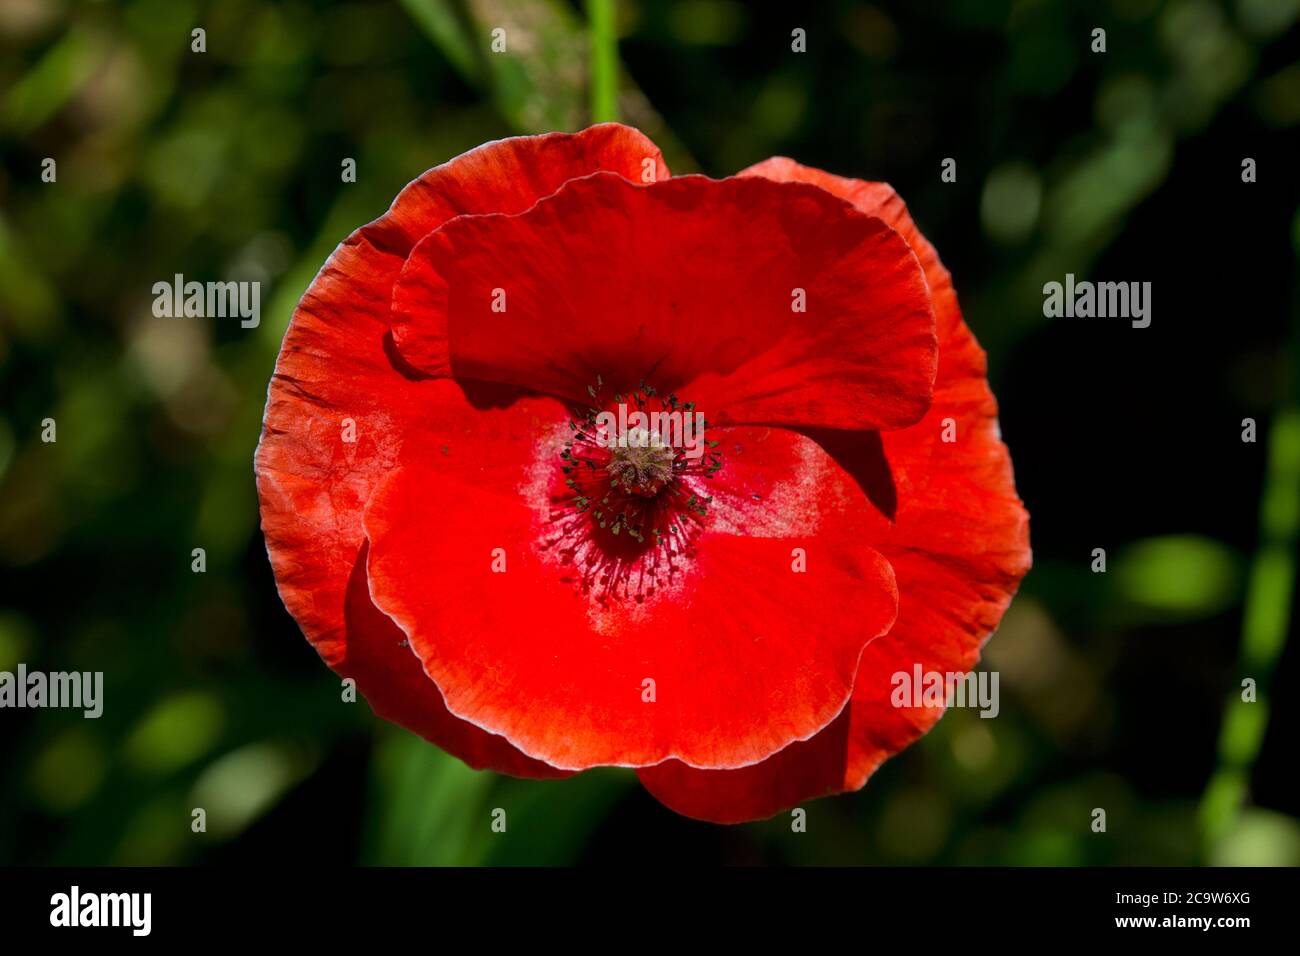 Gros plan de la fleur rouge vif du coquelicot commun, également connu sous le nom de coquelicot de Flandre Banque D'Images